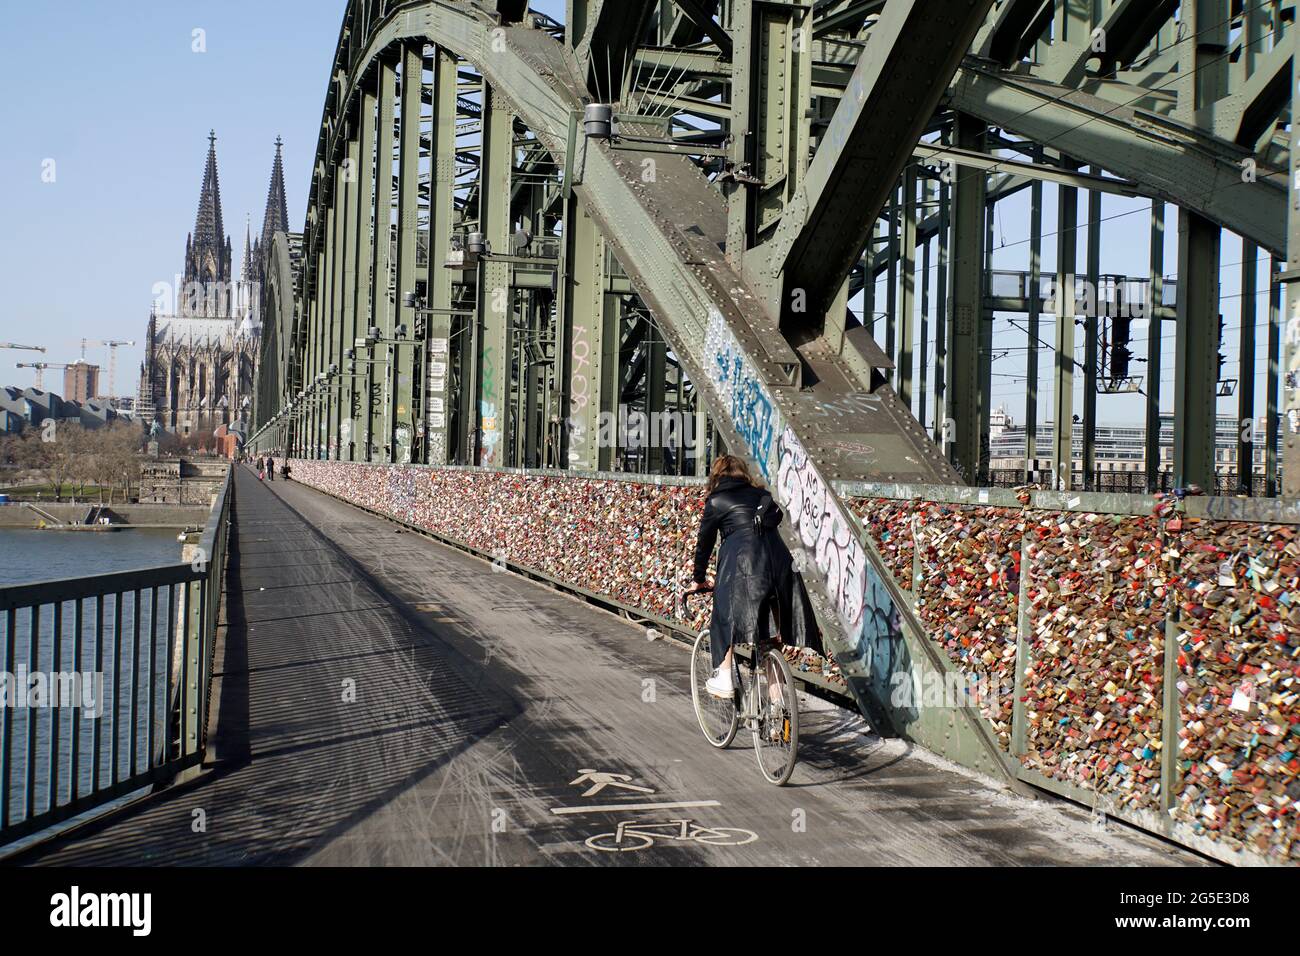 Touristenattraktion Liebsesschlösser auf der Hohenzollernbrücke, fast menschenleer während der Covid 19-Pandemie, Deutschland, Nordrhein-Westfalen, Kö Foto Stock